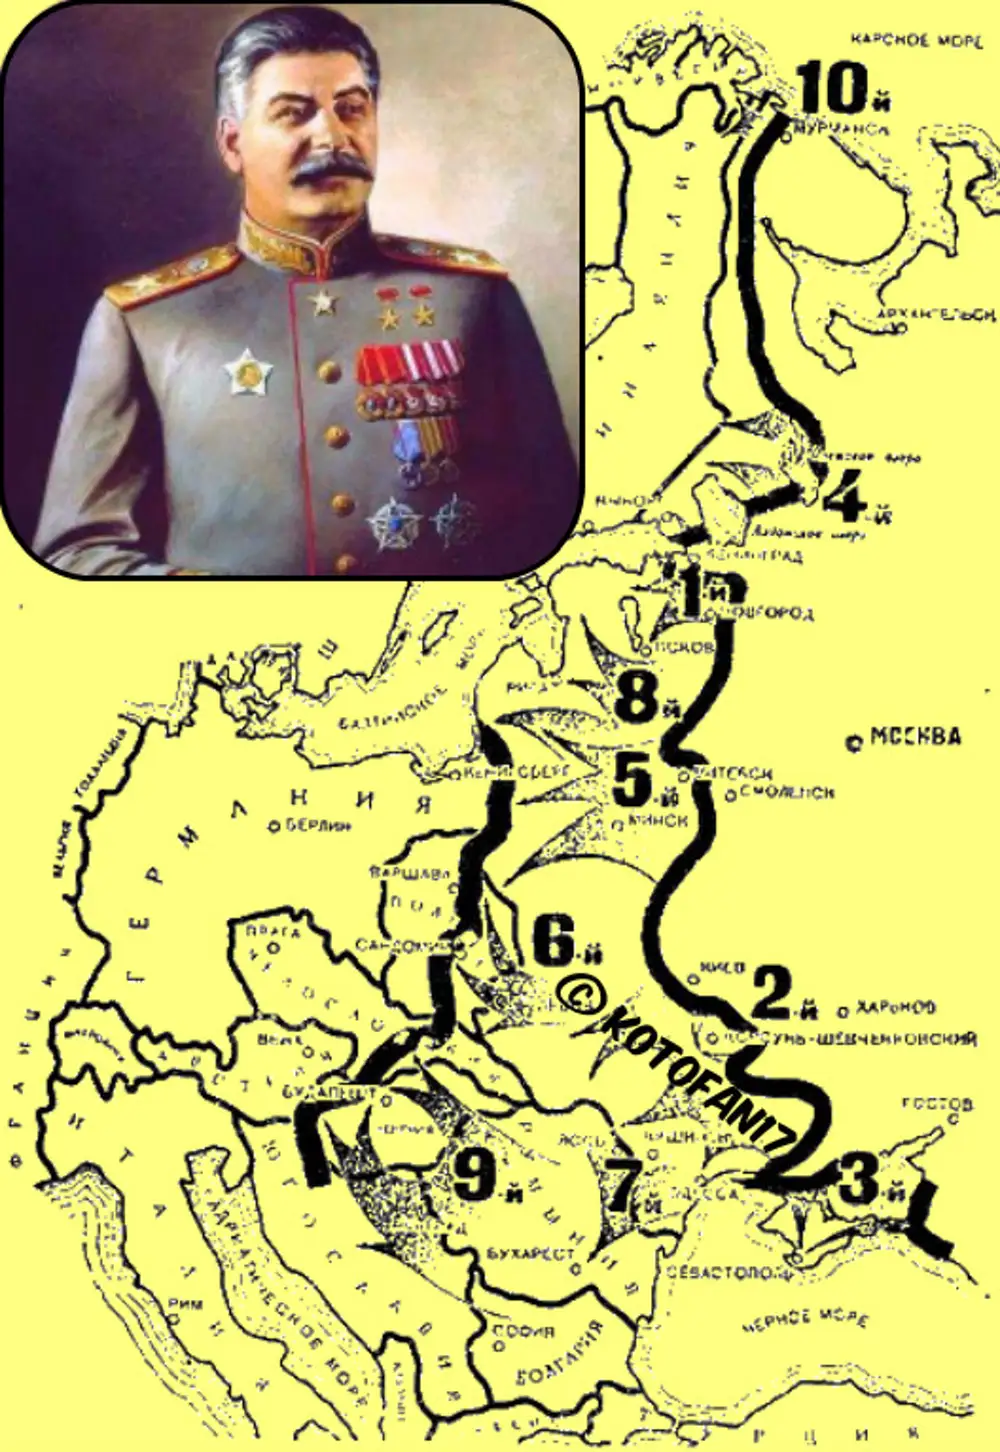 10 сталинских ударов егэ